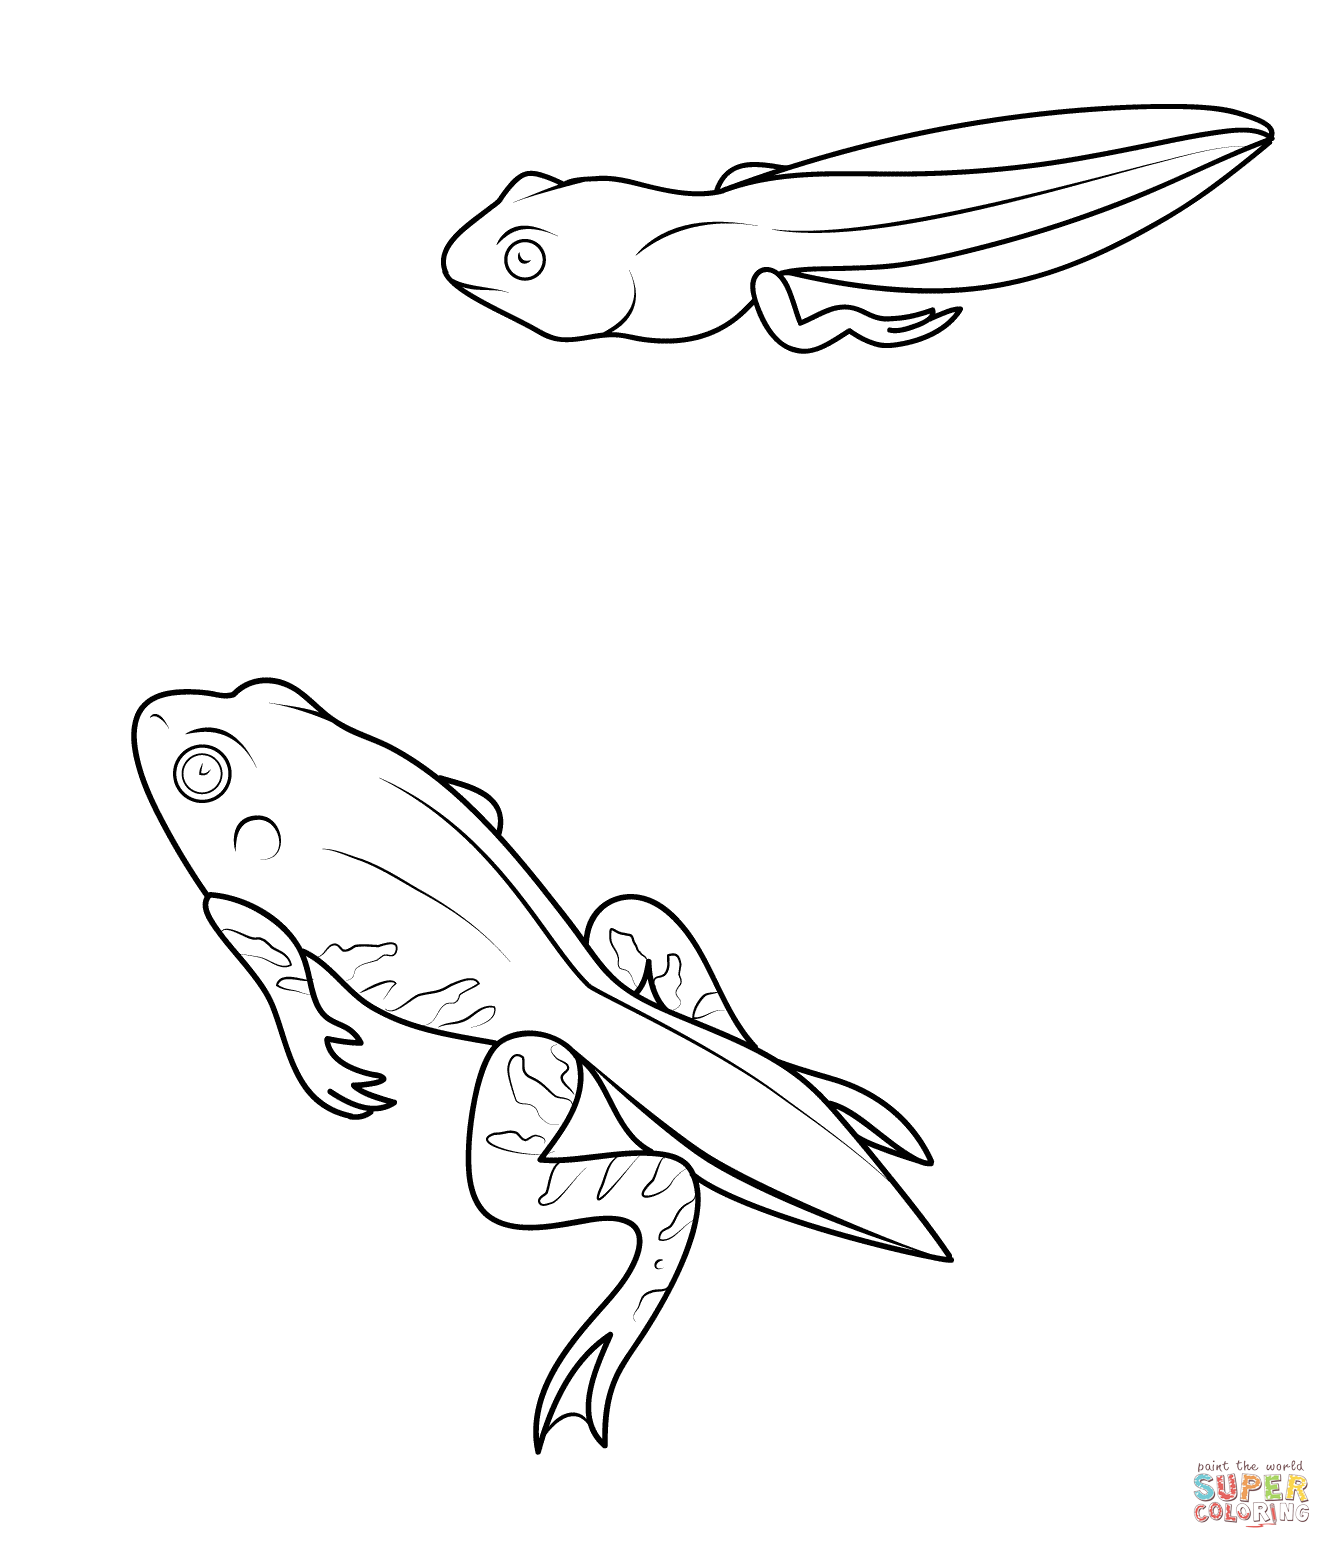 File:Metamorphosis frog Meyer